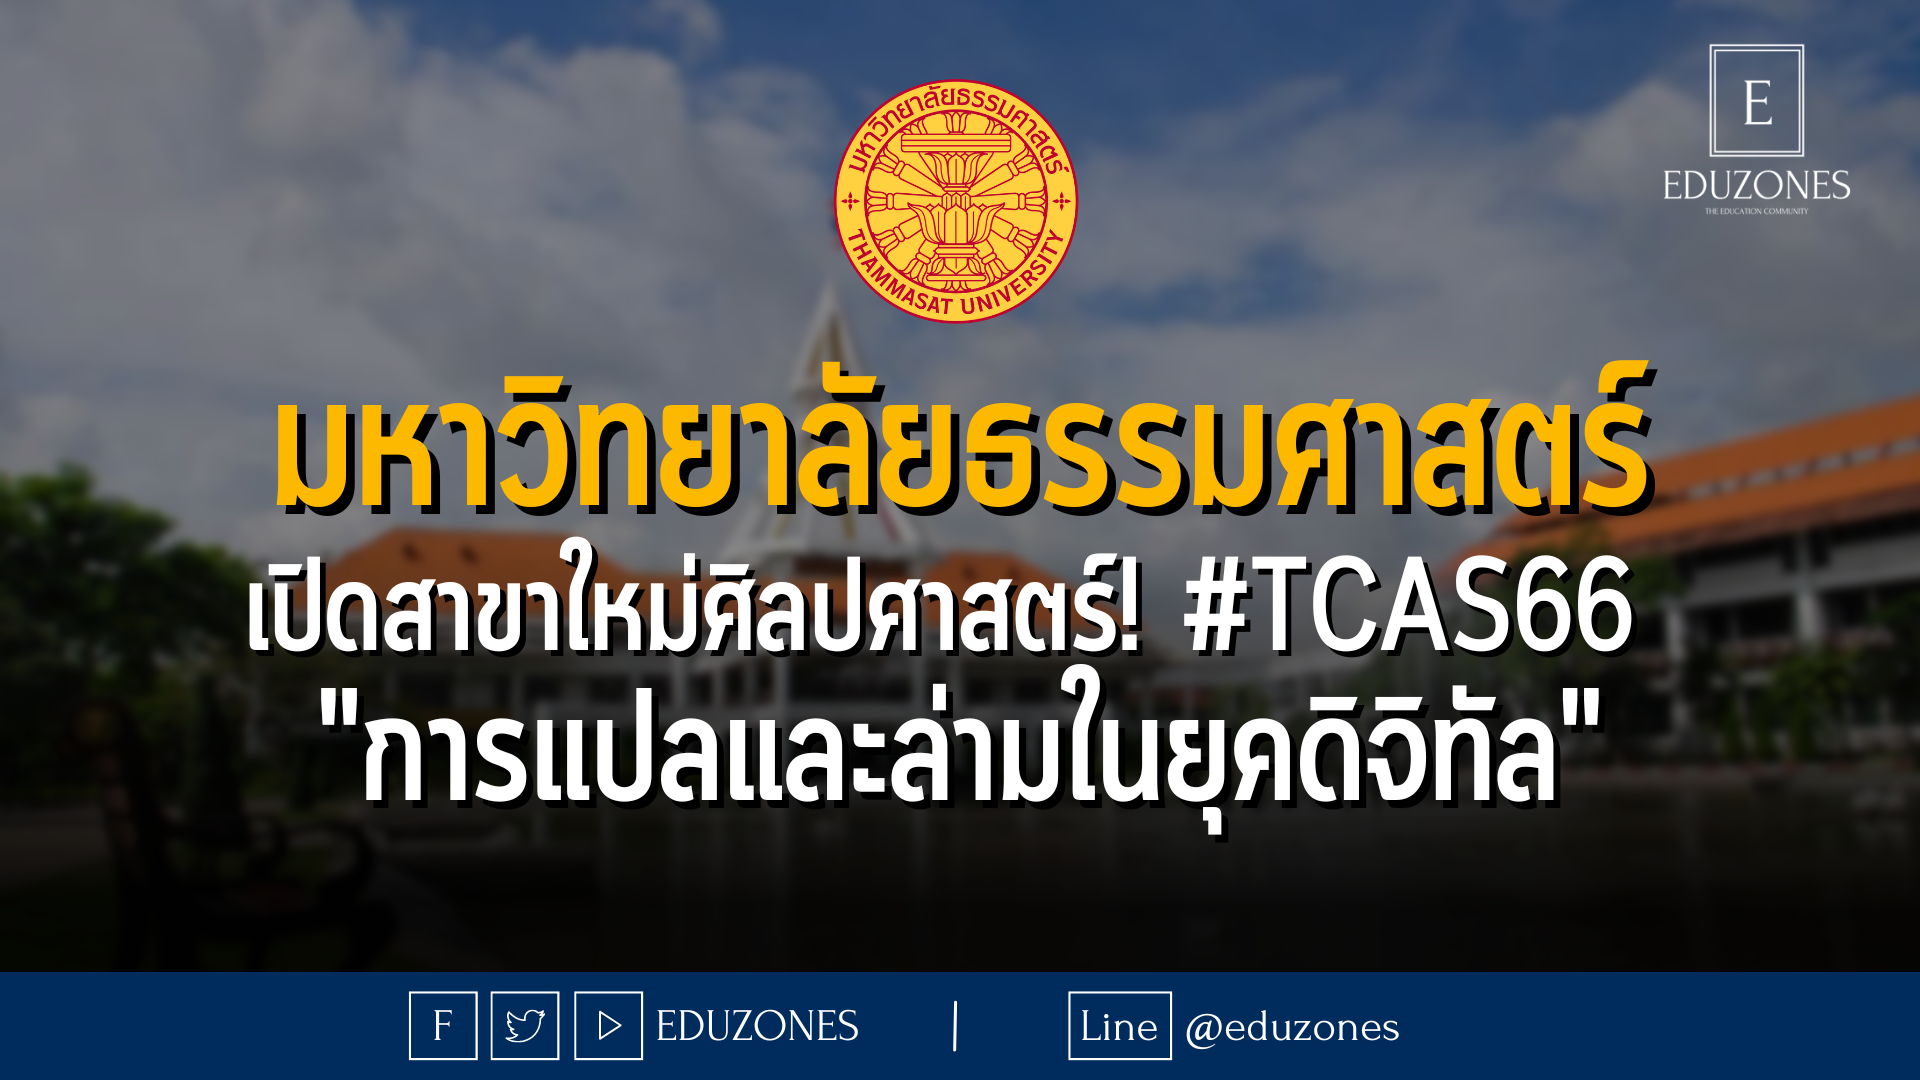 มหาวิทยาลัยธรรมศาสตร์ เปิดสาขาใหม่ศิลปศาสตร์! #TCAS66  "การแปลและล่ามในยุคดิจิทัล"